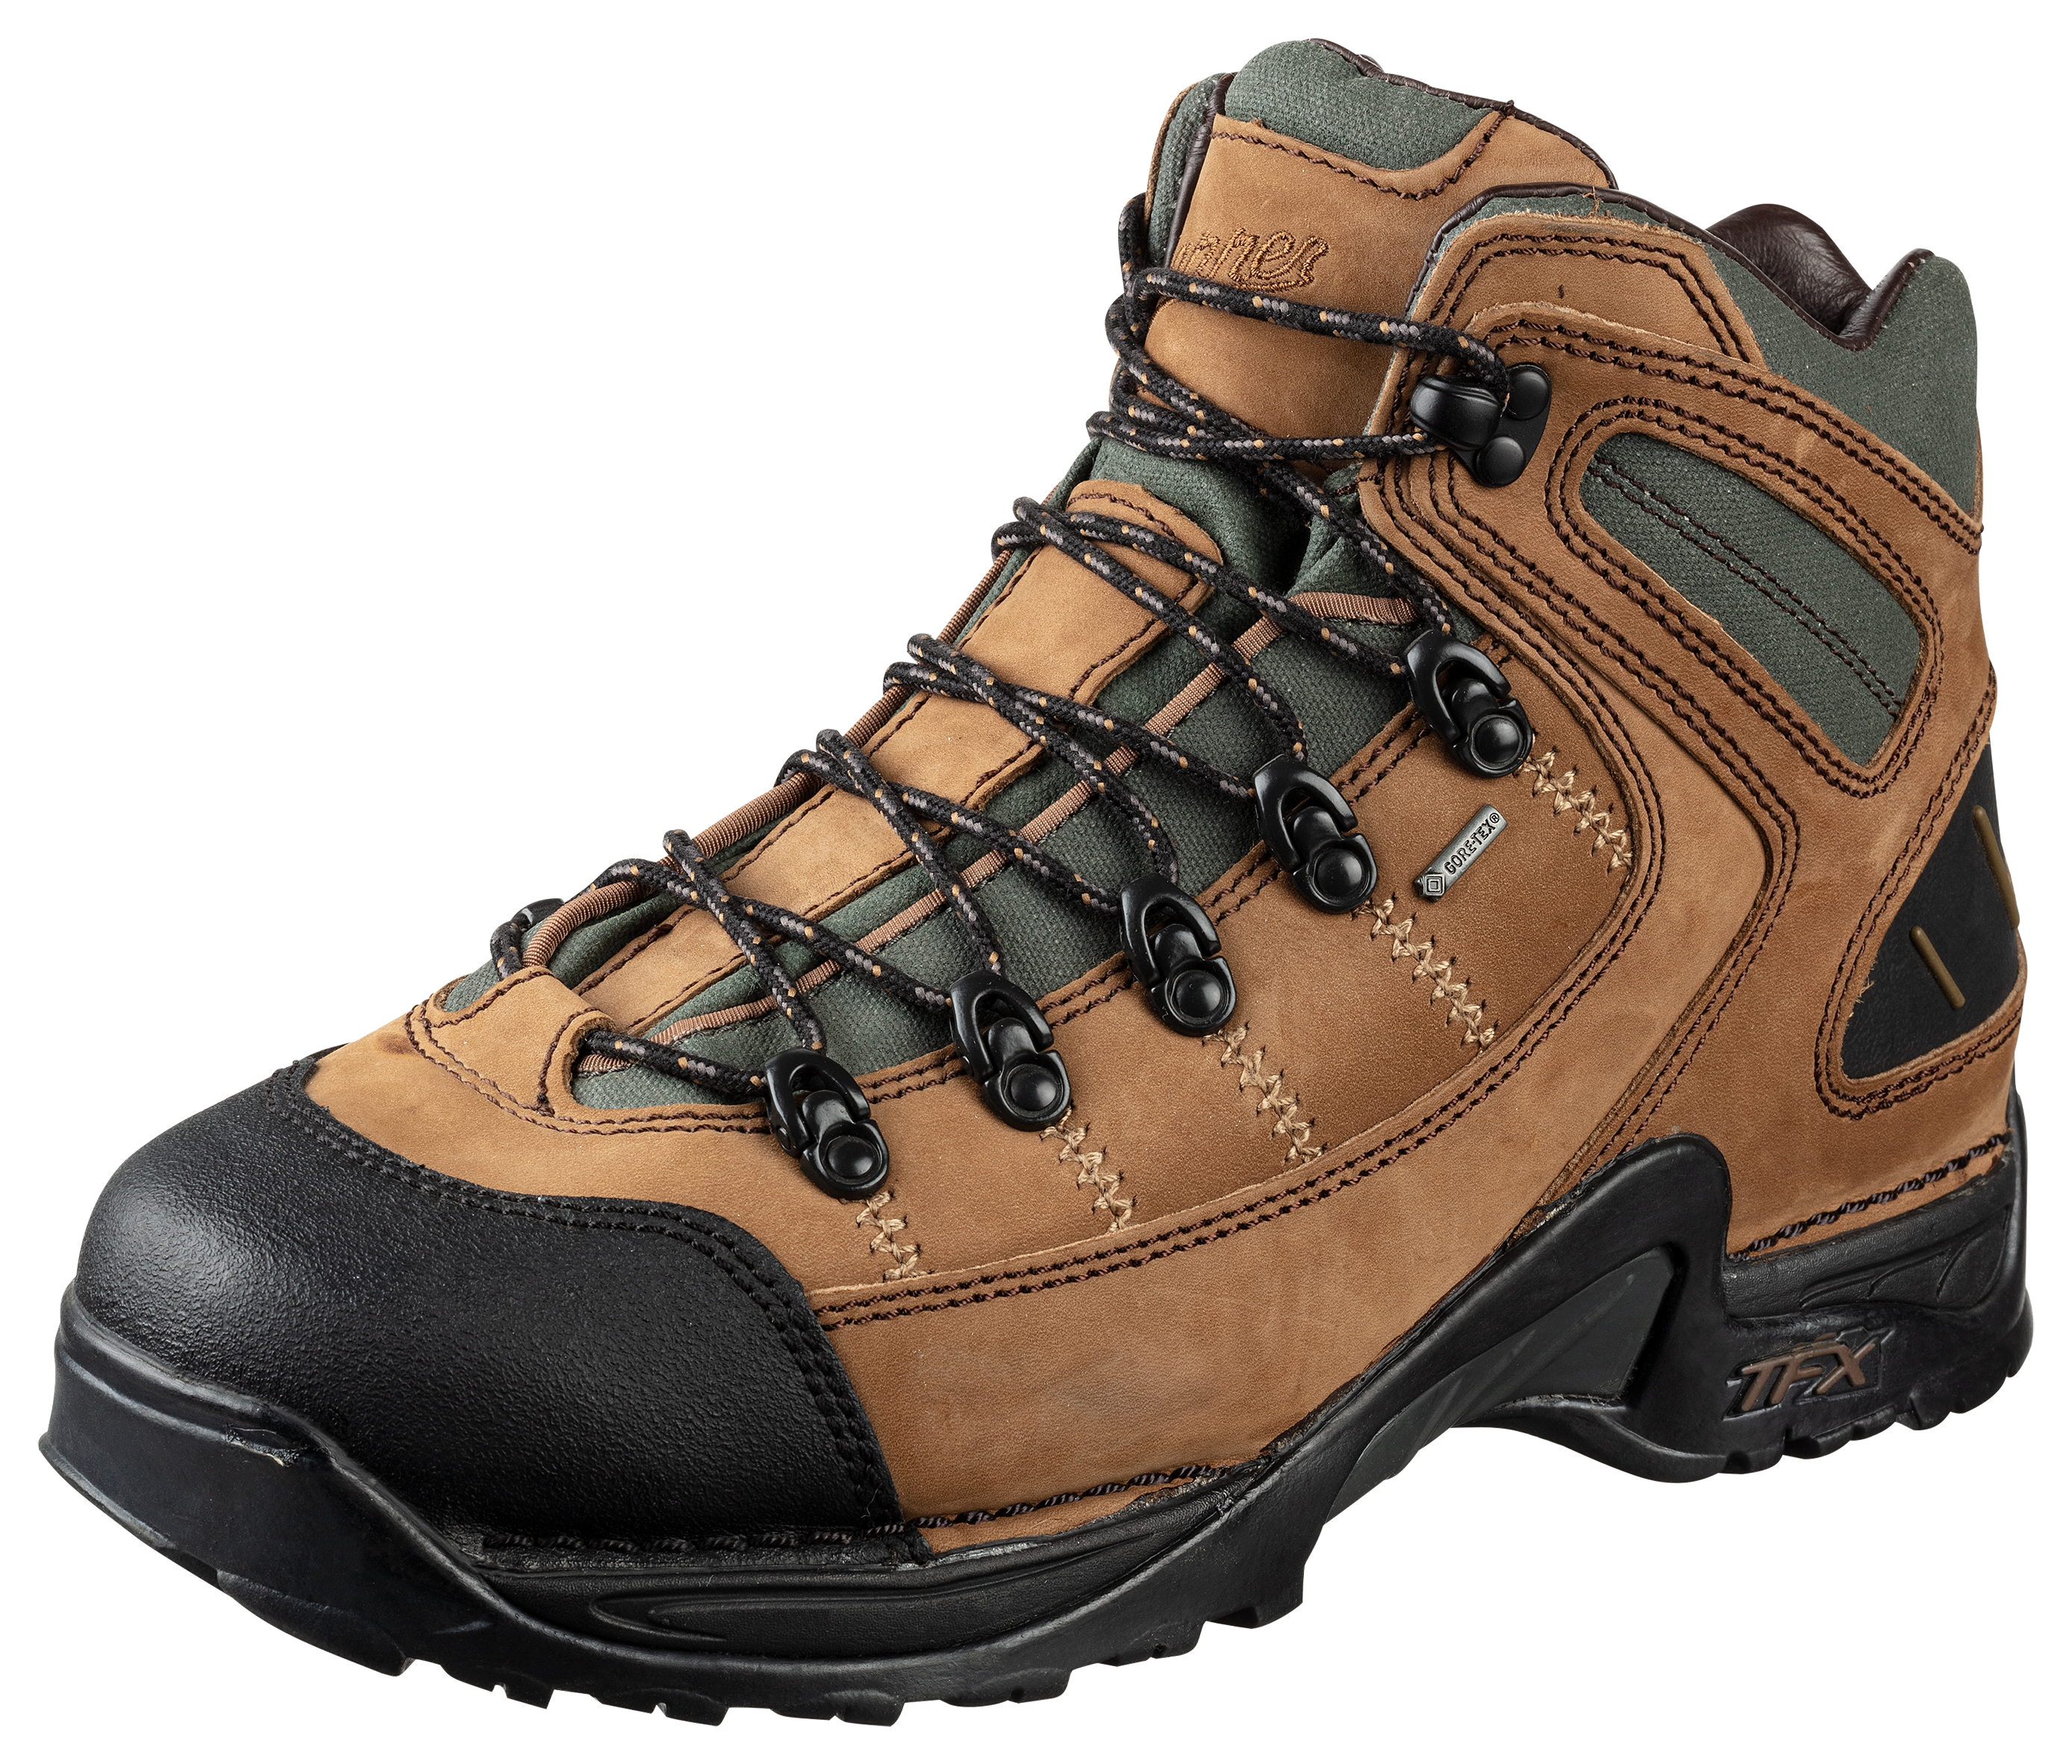 Danner 453 GORE-TEX Waterproof Hiking Boots for Men - Dark Tan - 15M